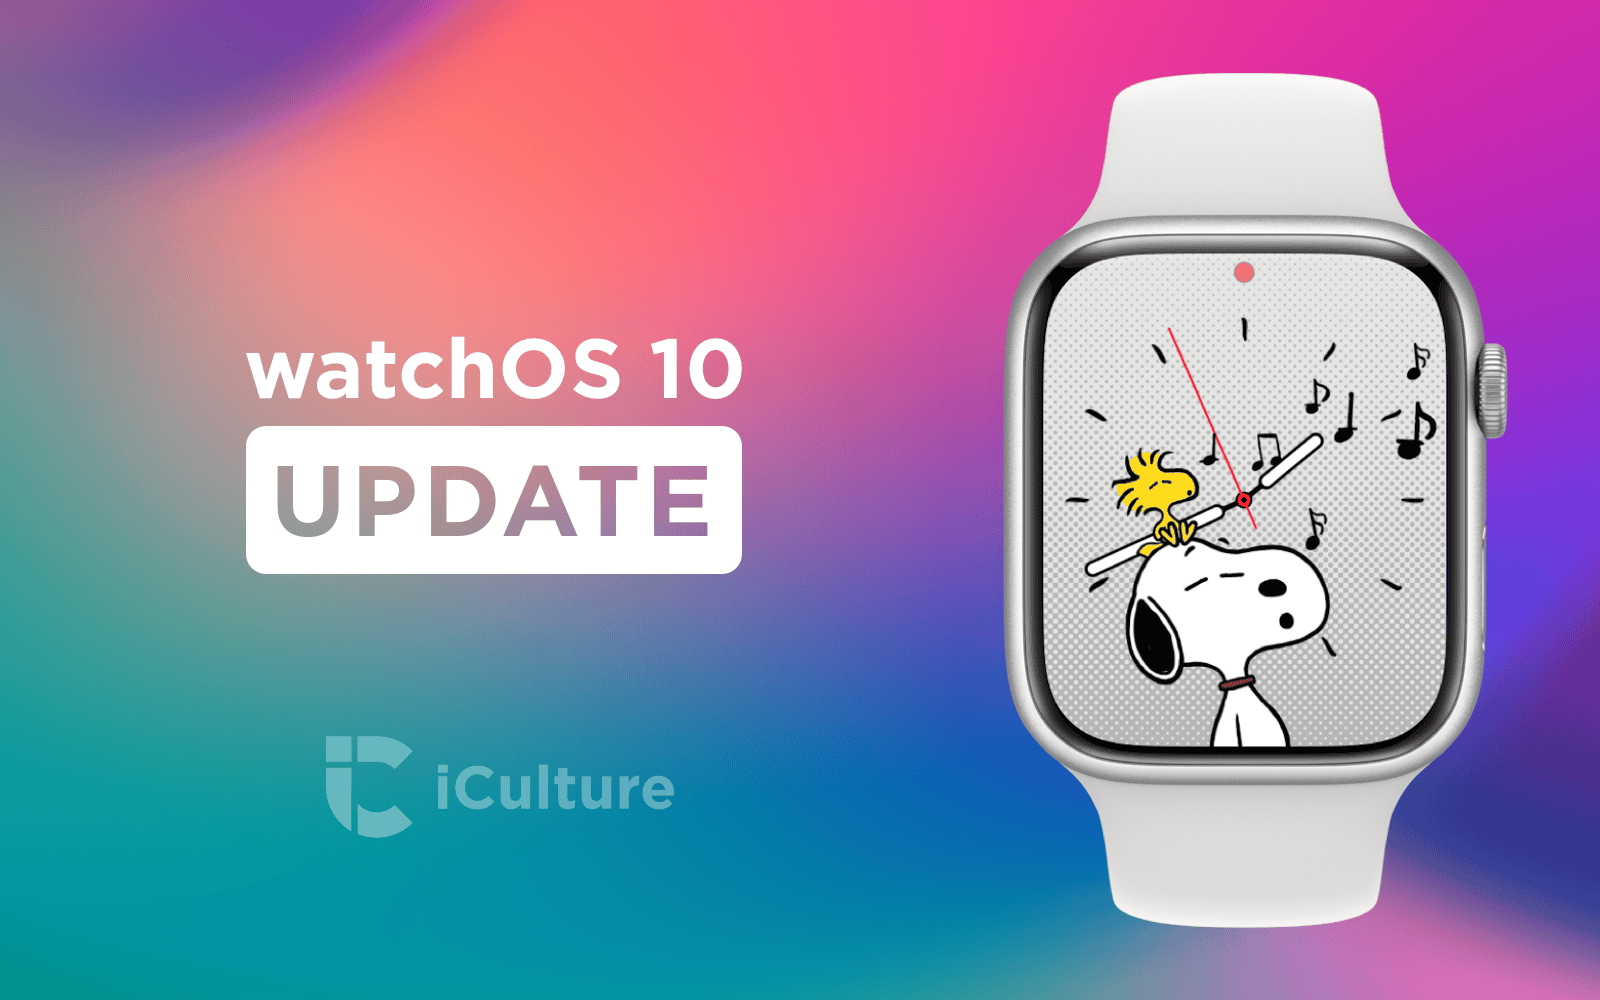 watchOS 10 Update